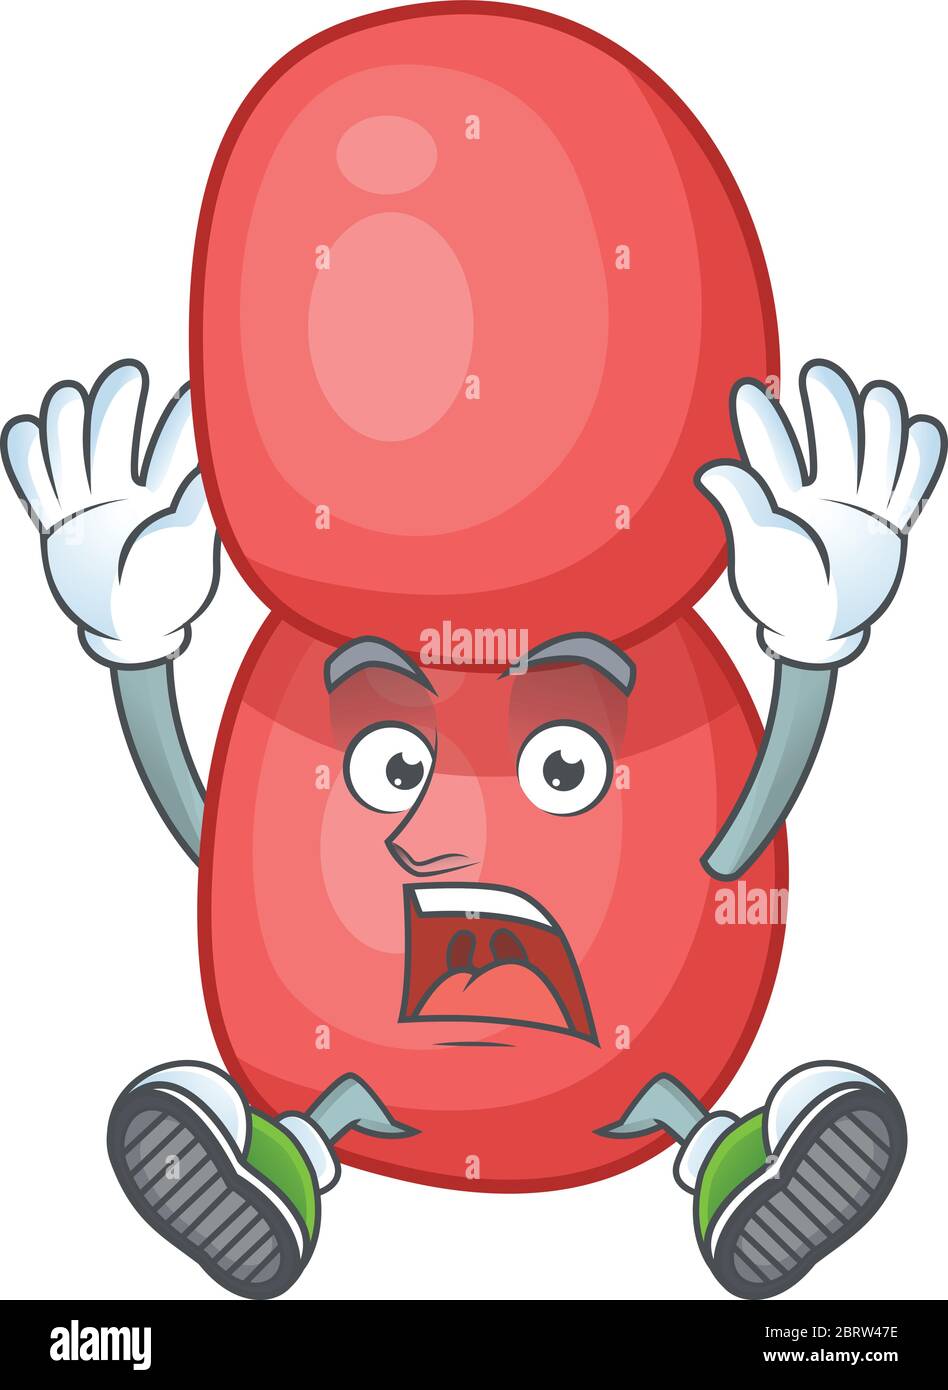 disegno di carattere cartoon di neisseria gonorrhoeae che ha un gesto scioccante Illustrazione Vettoriale